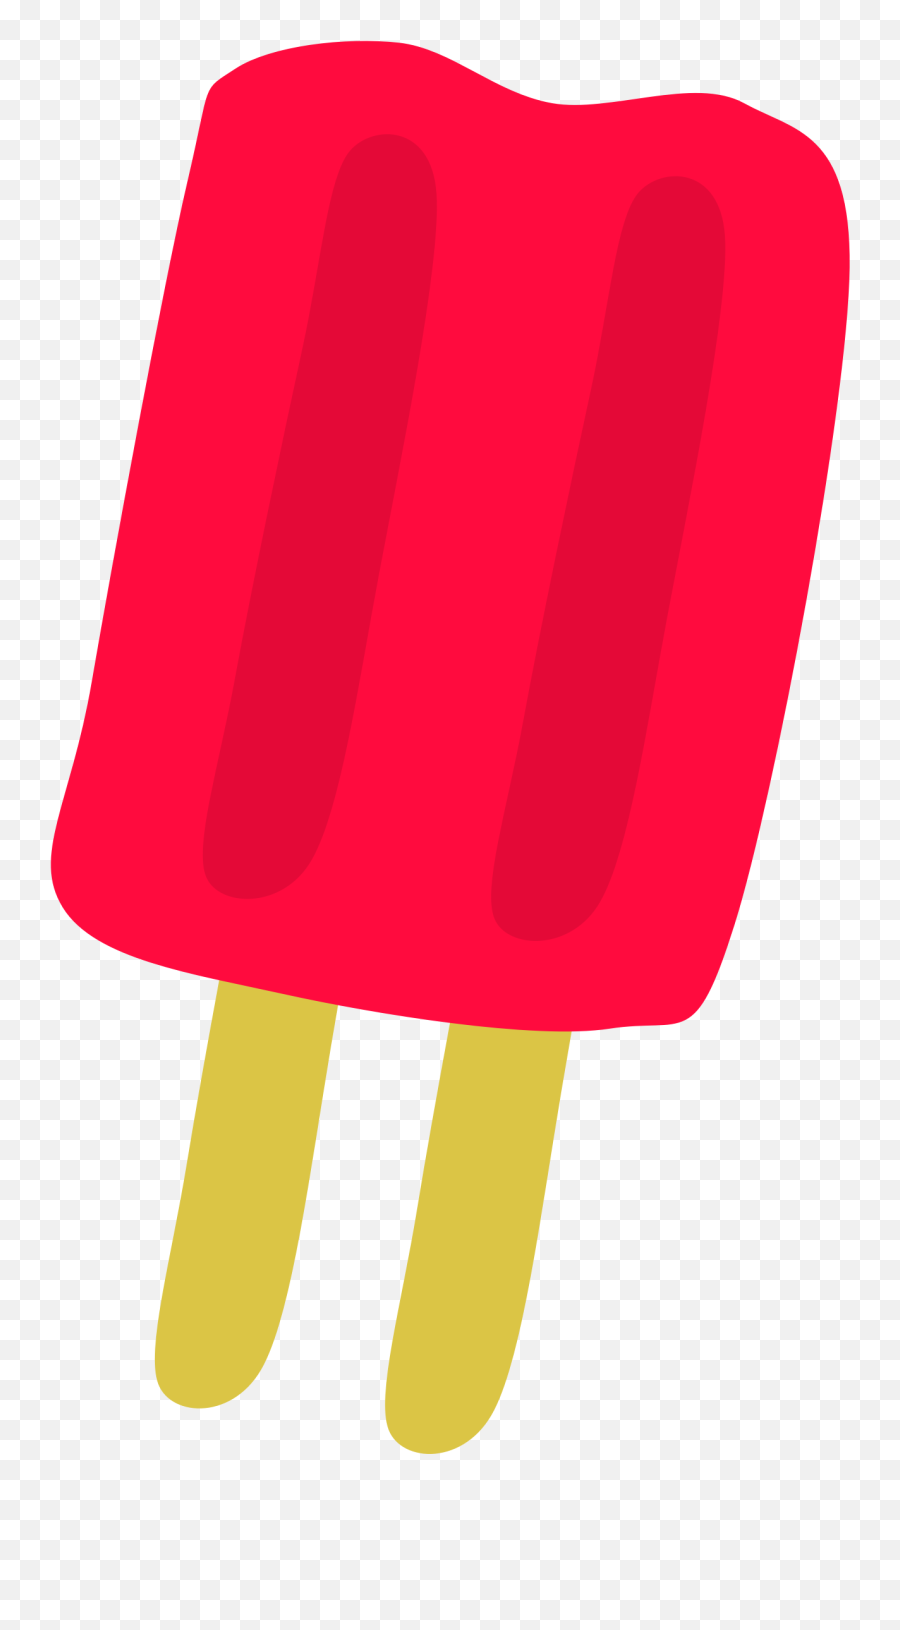 Firecracker Clipart Firecracker Popsicle Firecracker - Ice Pop Clip Art Emoji,Firecracker Emoji